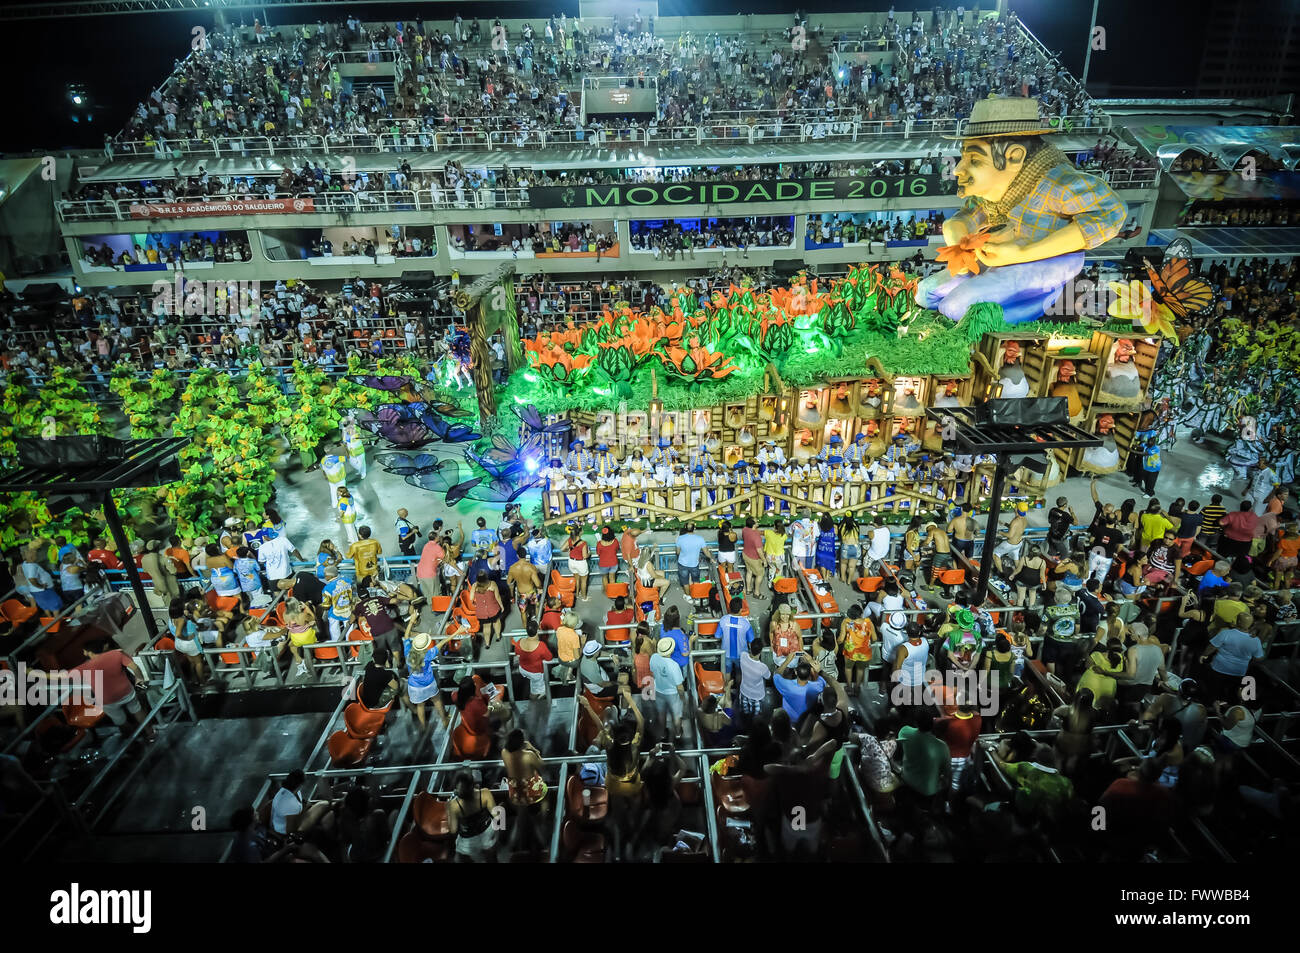 Die Sambaschule Unidos da Tijuca paradieren am Rio Karneval 2016. Allegorische Wagen und Interpreten auf dem Sambodromo paradieren Stockfoto